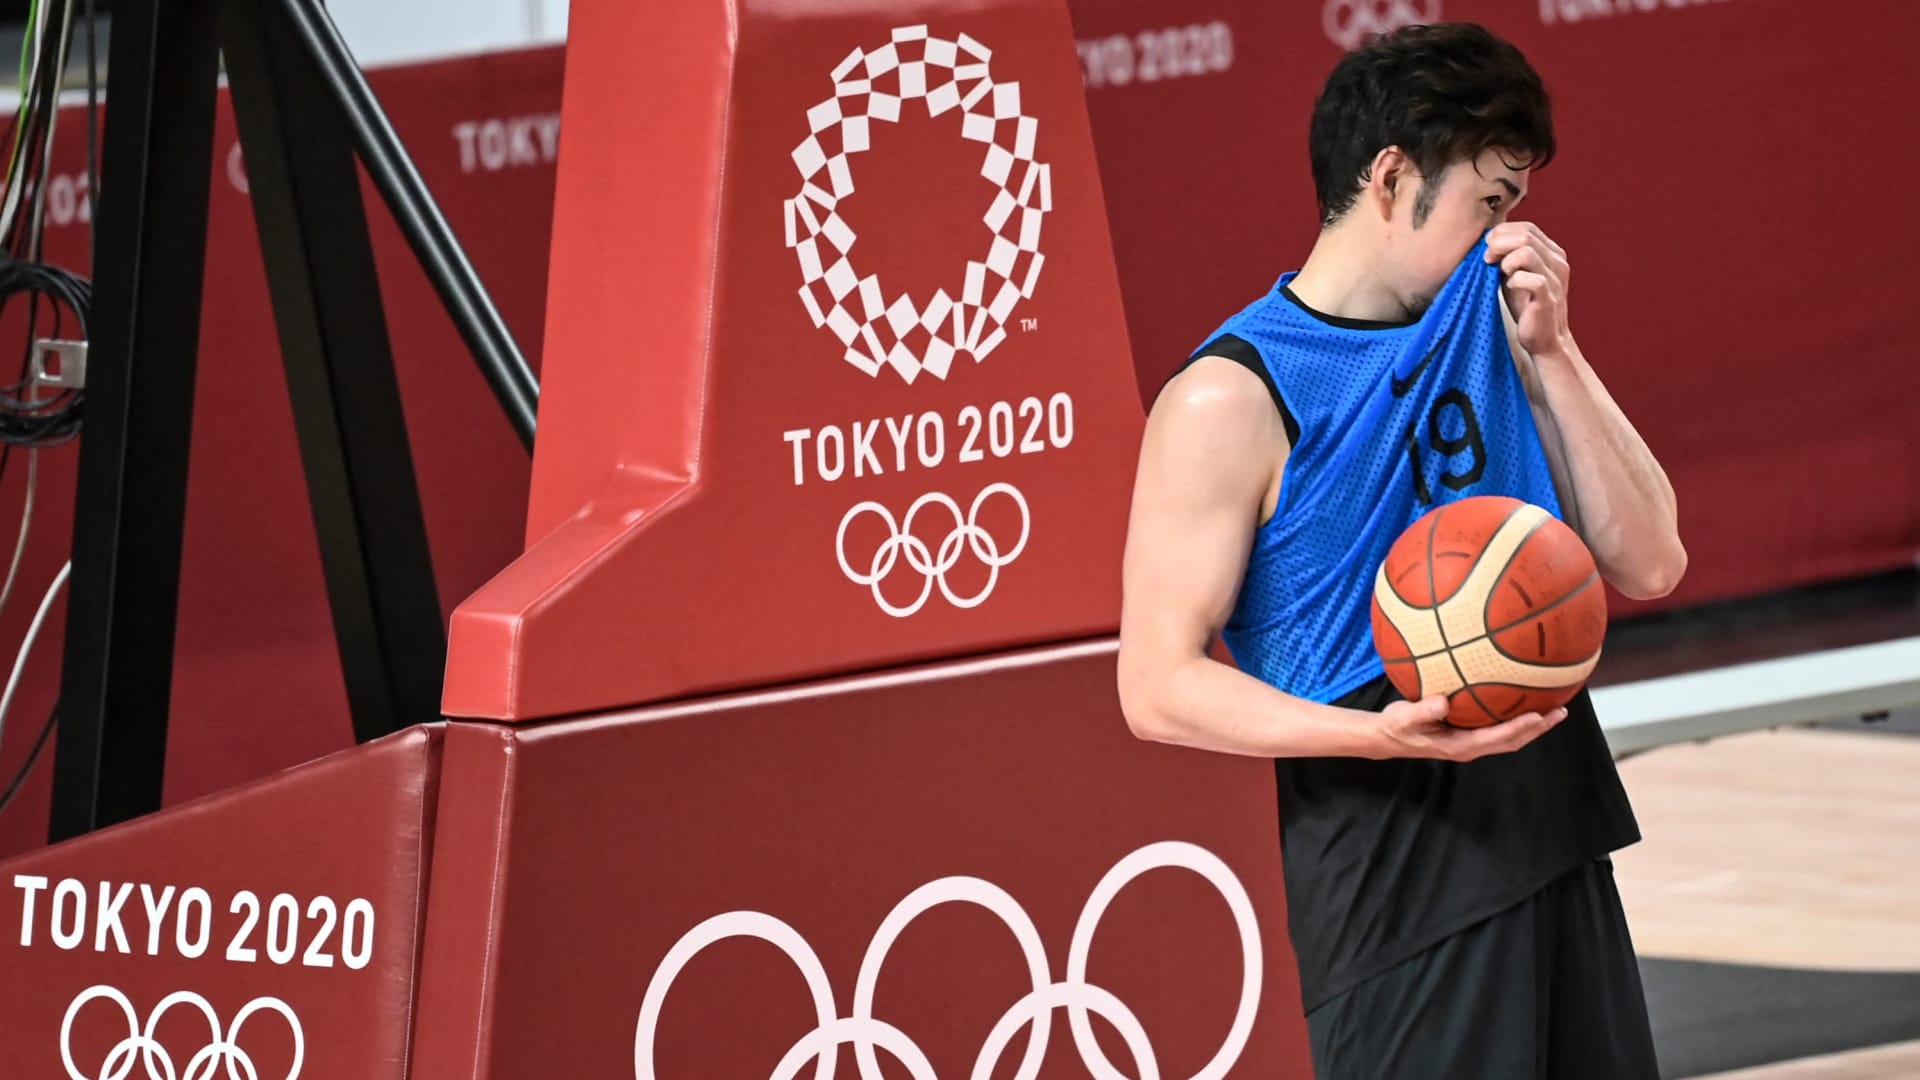 بعضهم قفز على الأسرّة بشدّة.. ما الذي يفعله الرياضيون داخل القرية الأولمبية بطوكيو؟